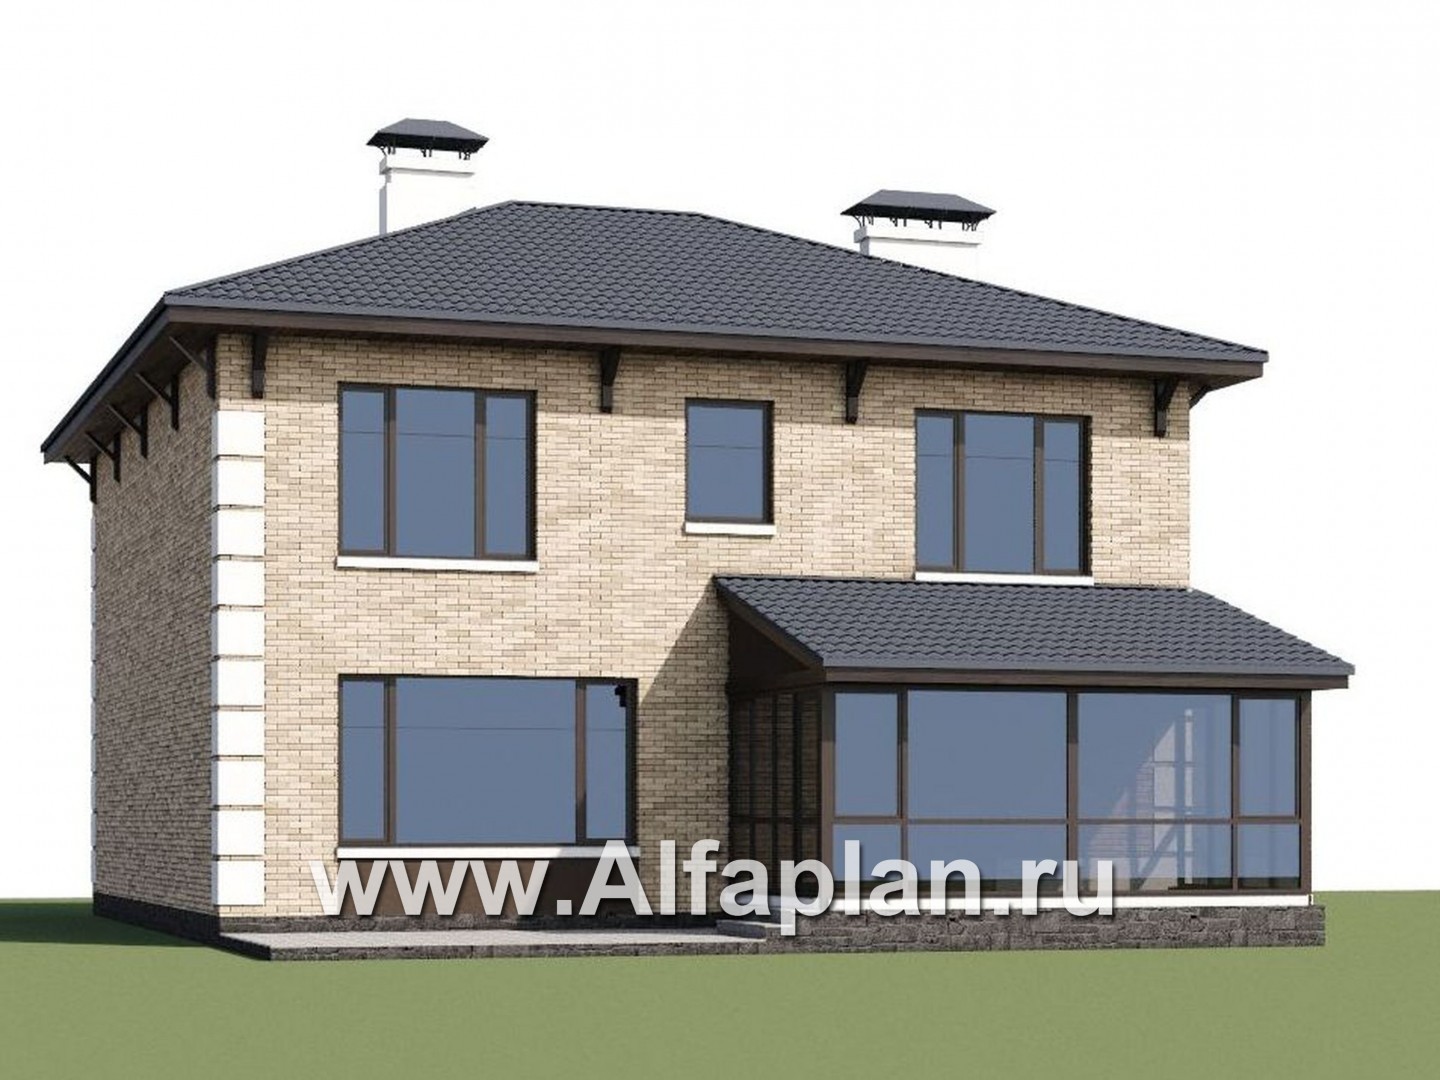 Проекты домов Альфаплан - «Седьмая высота» - комфортабельный дом с большой гостиной - дополнительное изображение №1